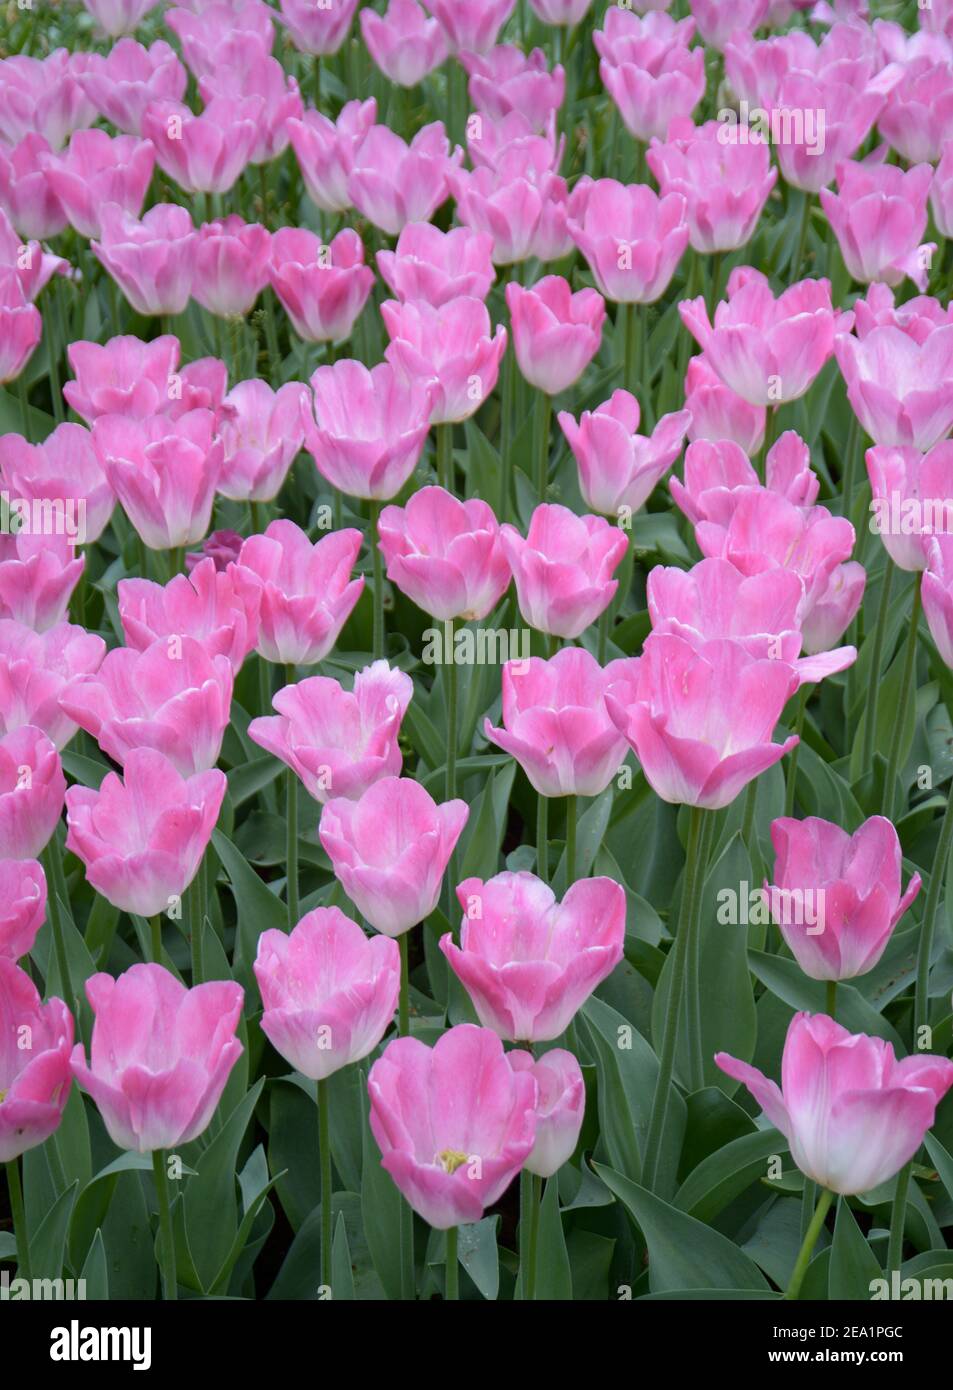 Tulips roses en pleine floraison aux jardins de Keukenhof, également connu sous le nom de jardin d'Europe. Un des plus grands jardins de fleurs de la municipalité de Lisse Banque D'Images